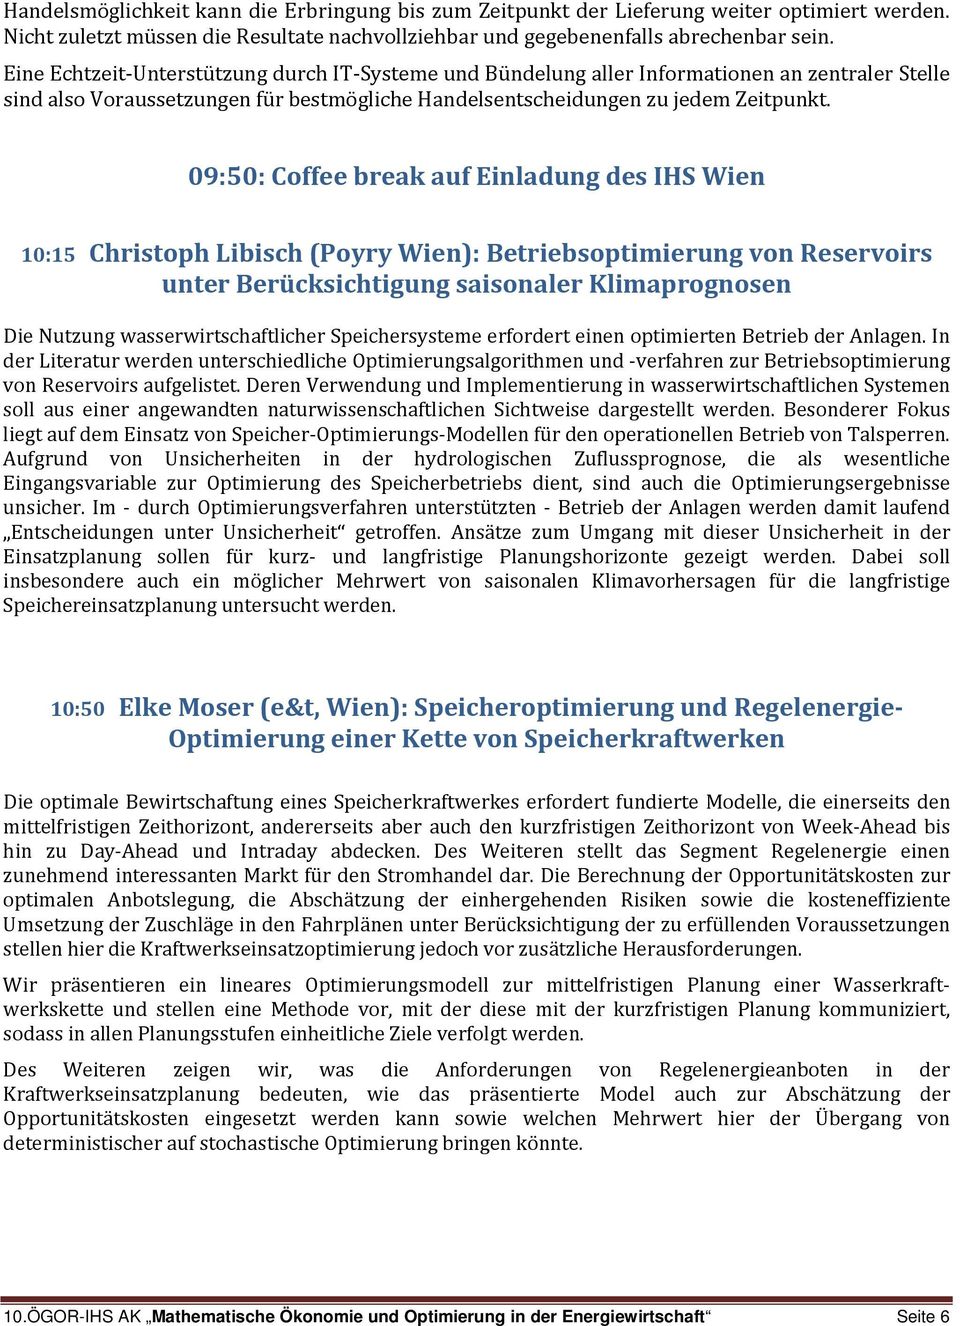 09:50: Coffee break auf Einladung des IHS Wien 10:15 Christoph Libisch (Poyry Wien): Betriebsoptimierung von Reservoirs unter Berücksichtigung saisonaler Klimaprognosen Die Nutzung